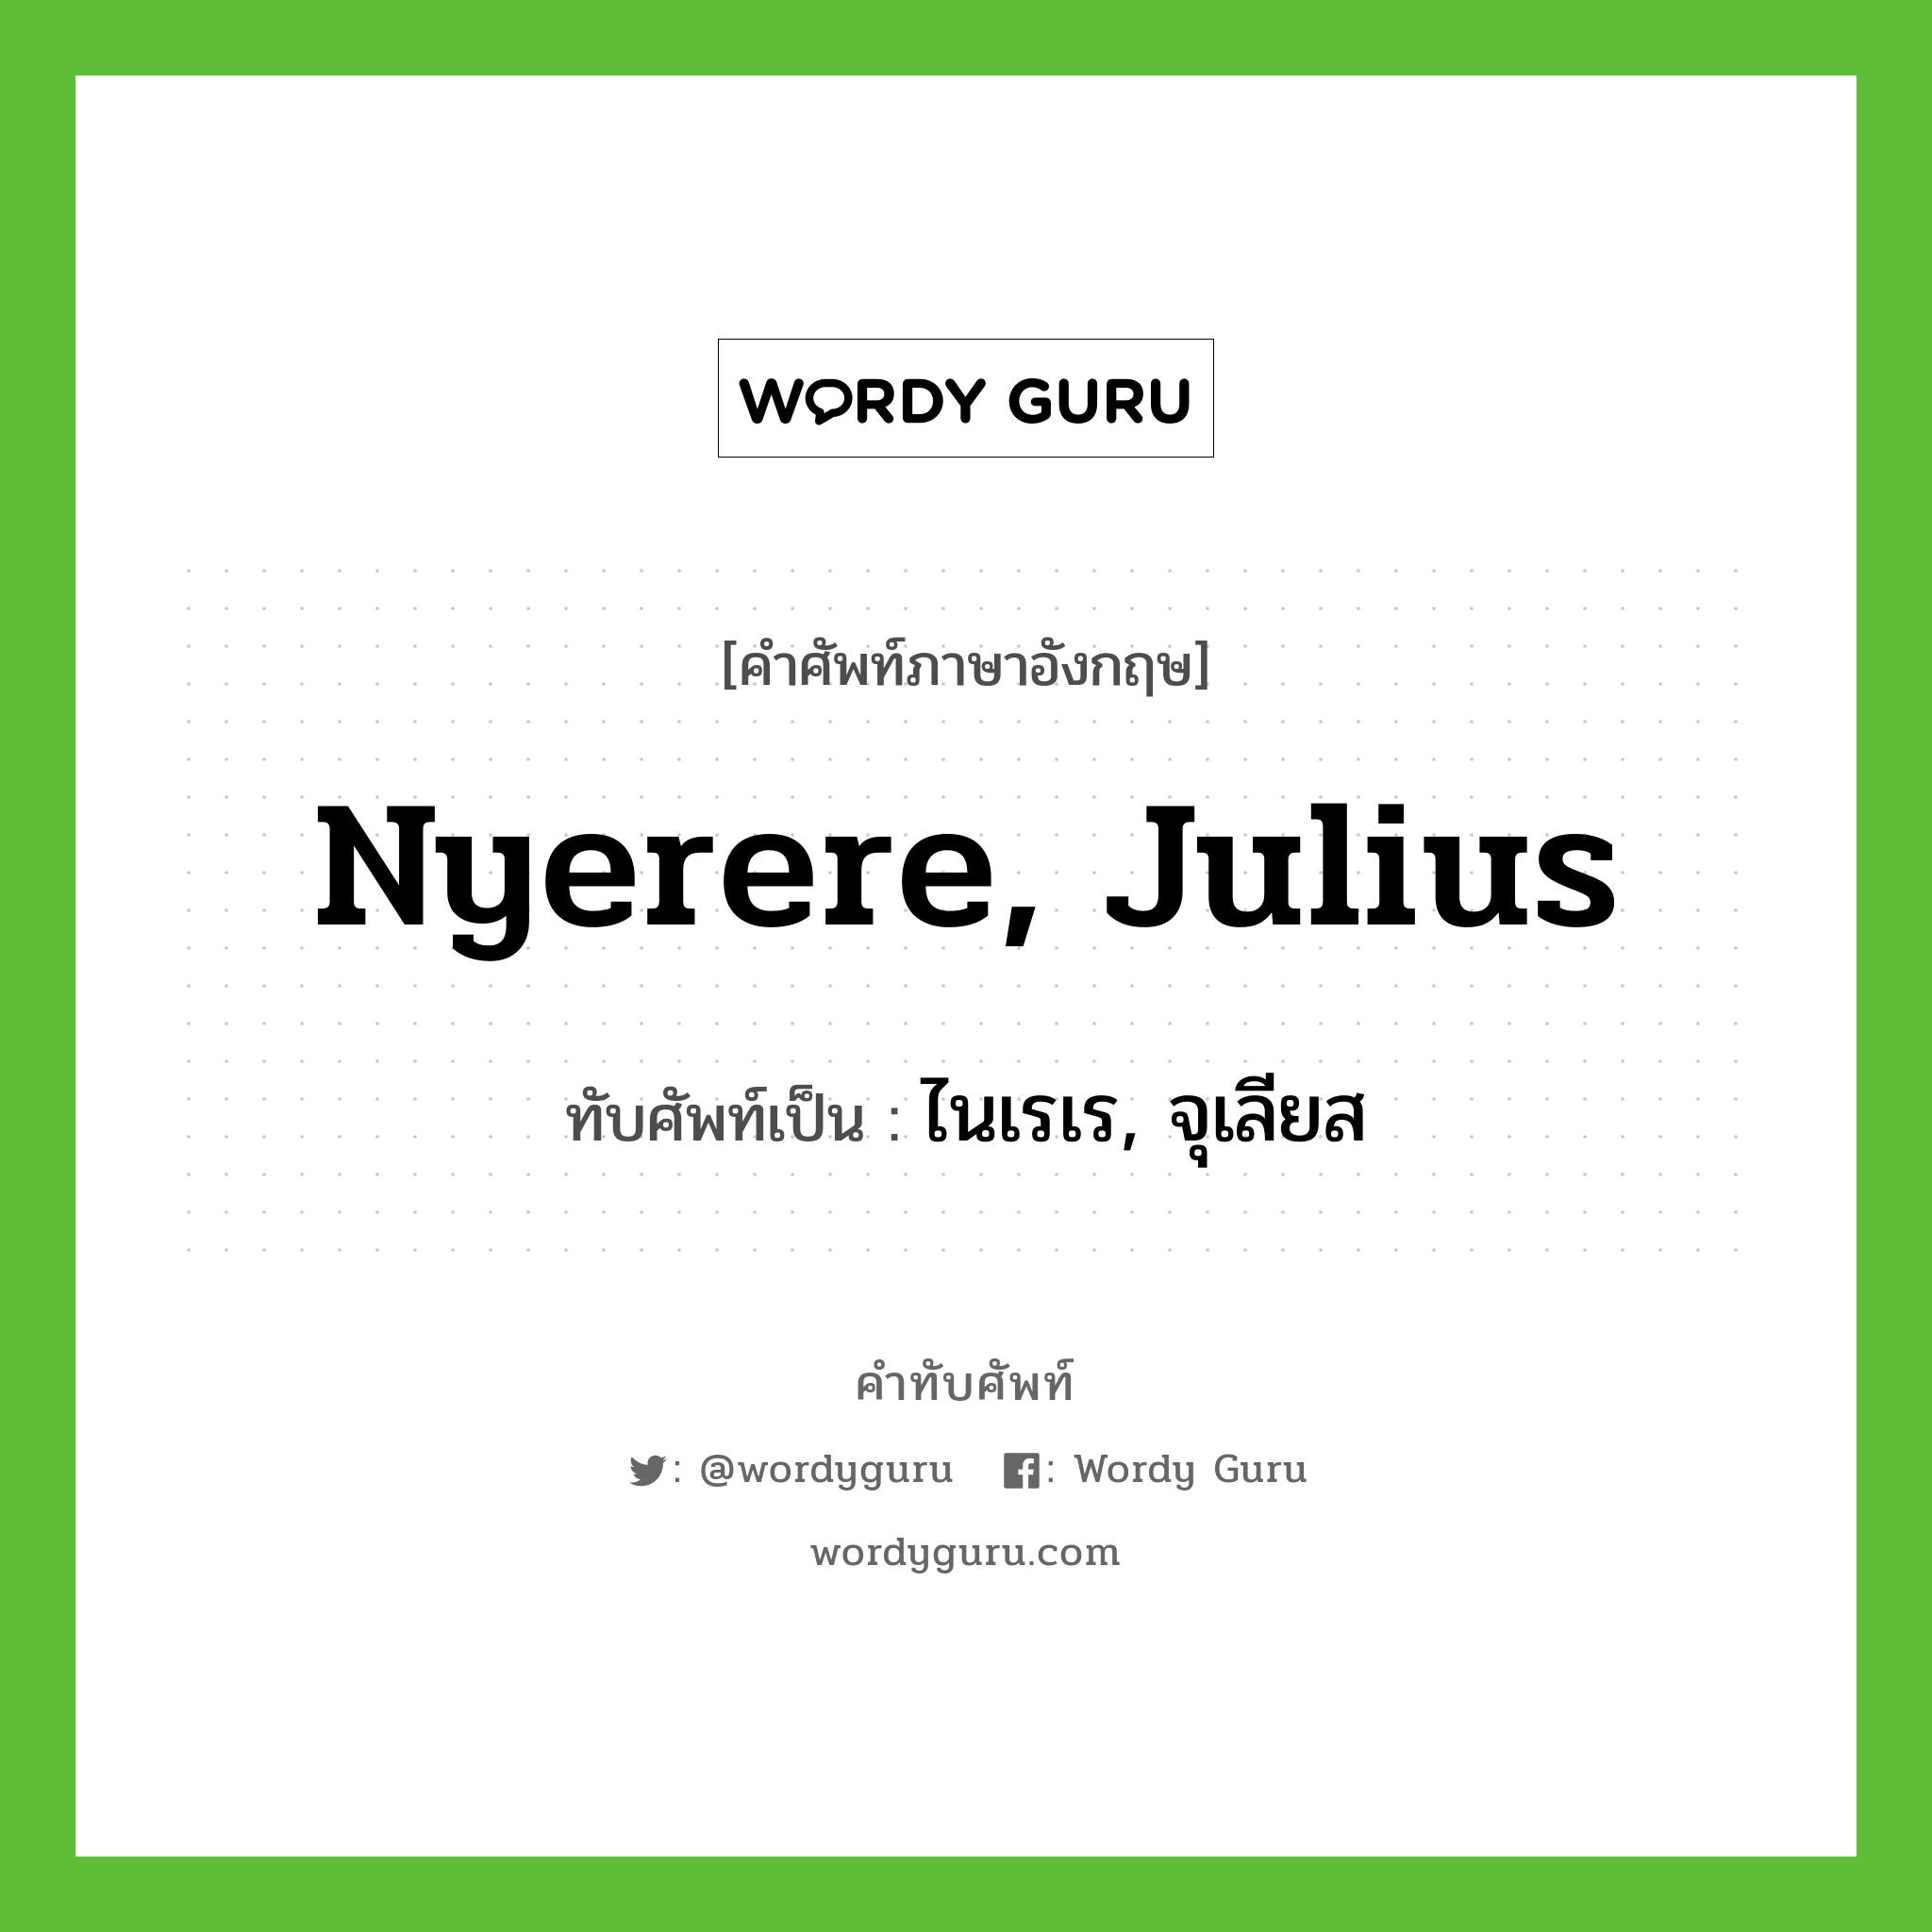 ไนเรเร, จุเลียส เขียนอย่างไร?, คำศัพท์ภาษาอังกฤษ ไนเรเร, จุเลียส ทับศัพท์เป็น Nyerere, Julius